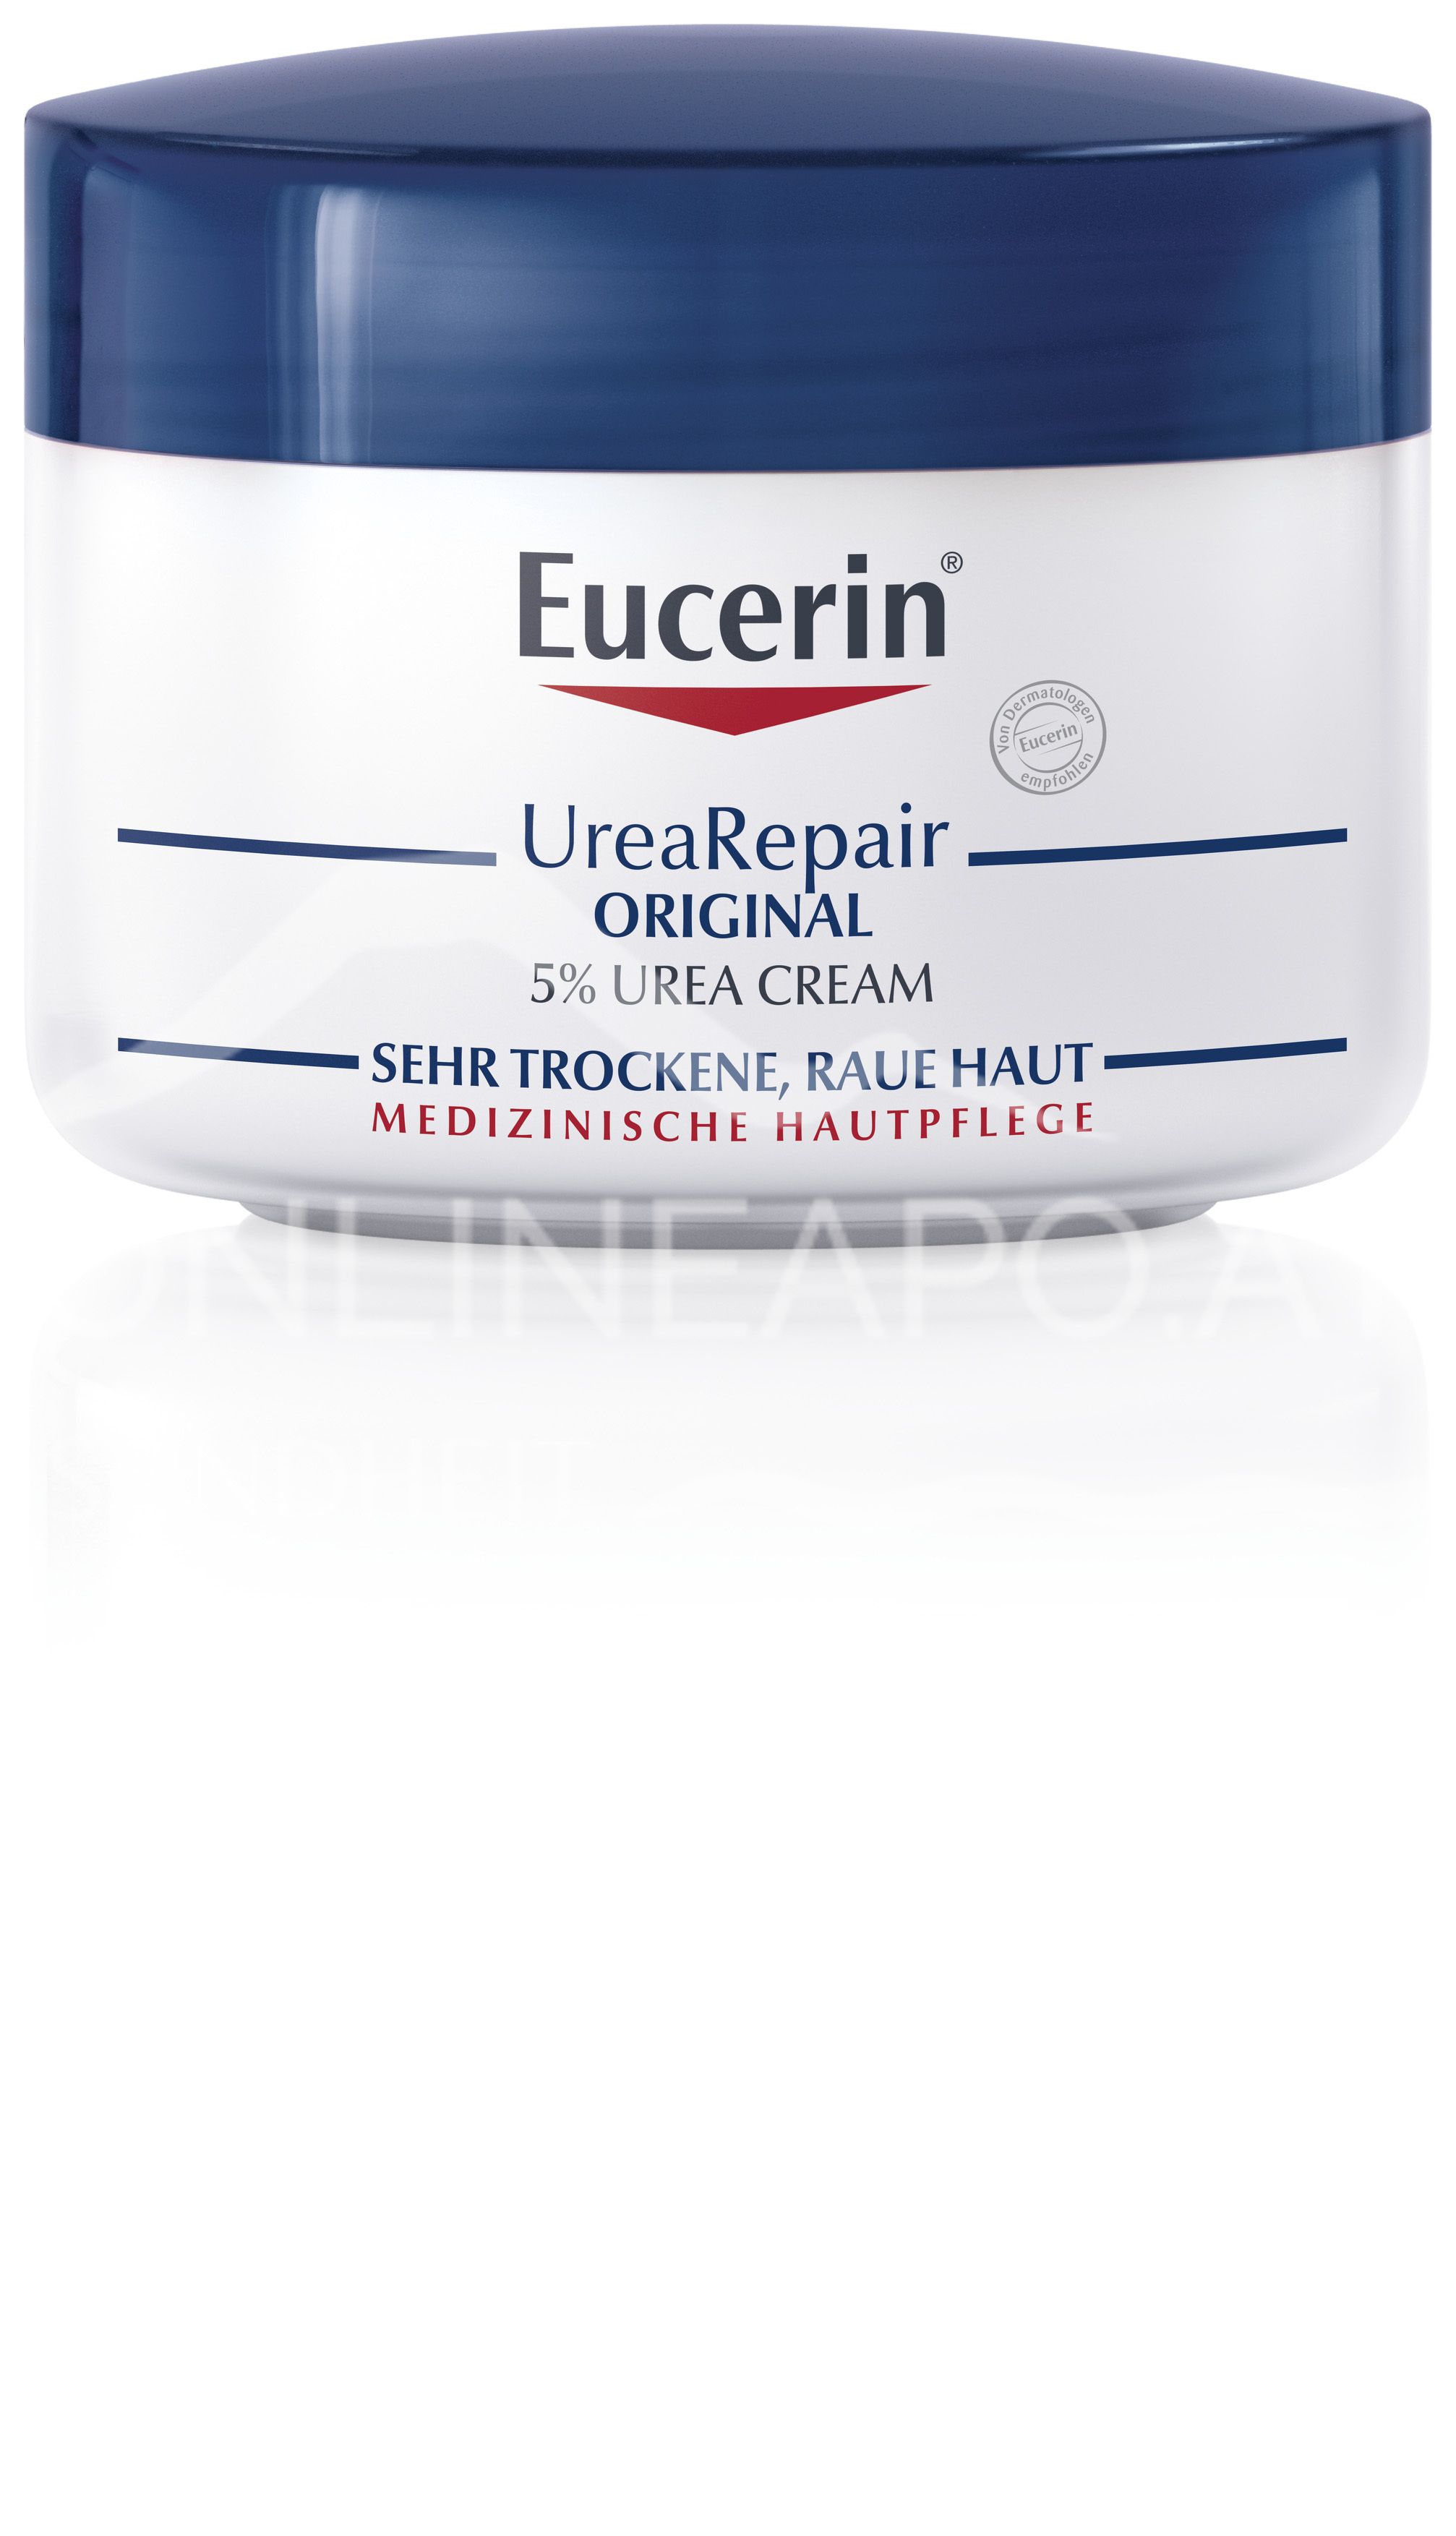 Eucerin® UreaRepair ORIGINAL 5% Urea Creme